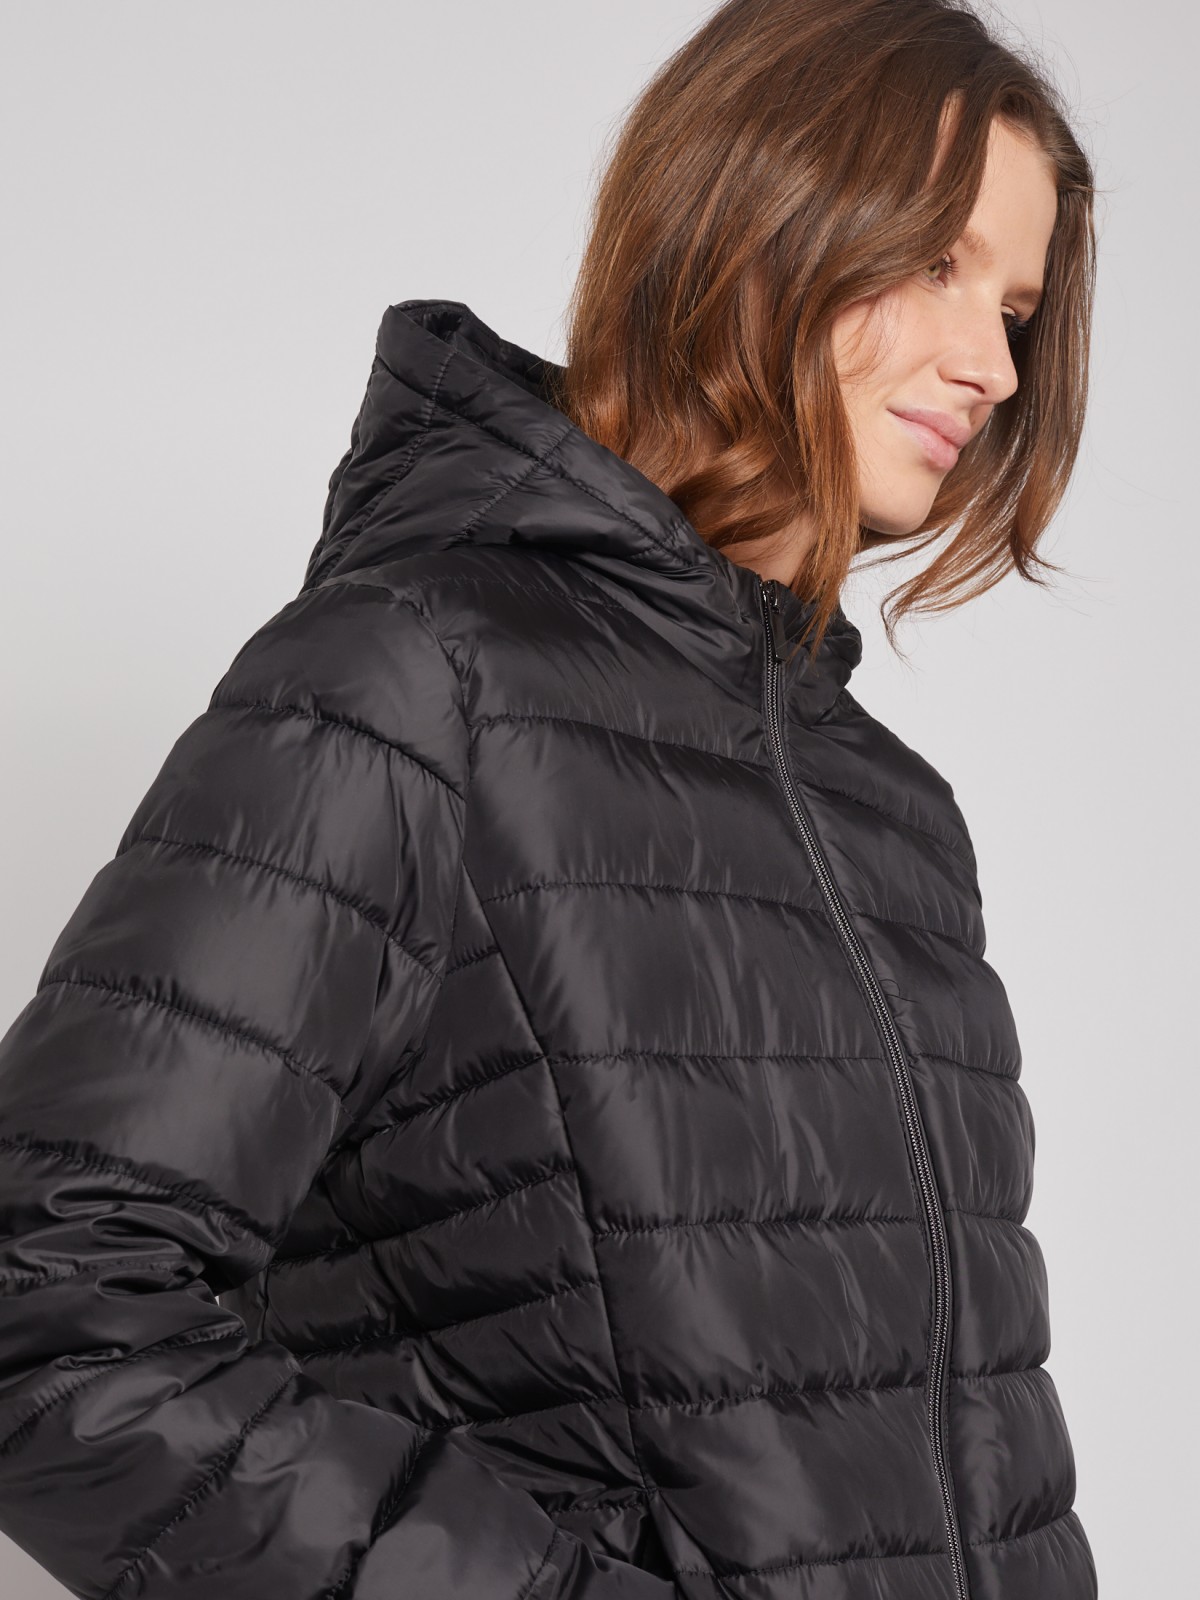 Утеплённая стёганая куртка с капюшоном zolla 022335112044, цвет черный, размер S - фото 5